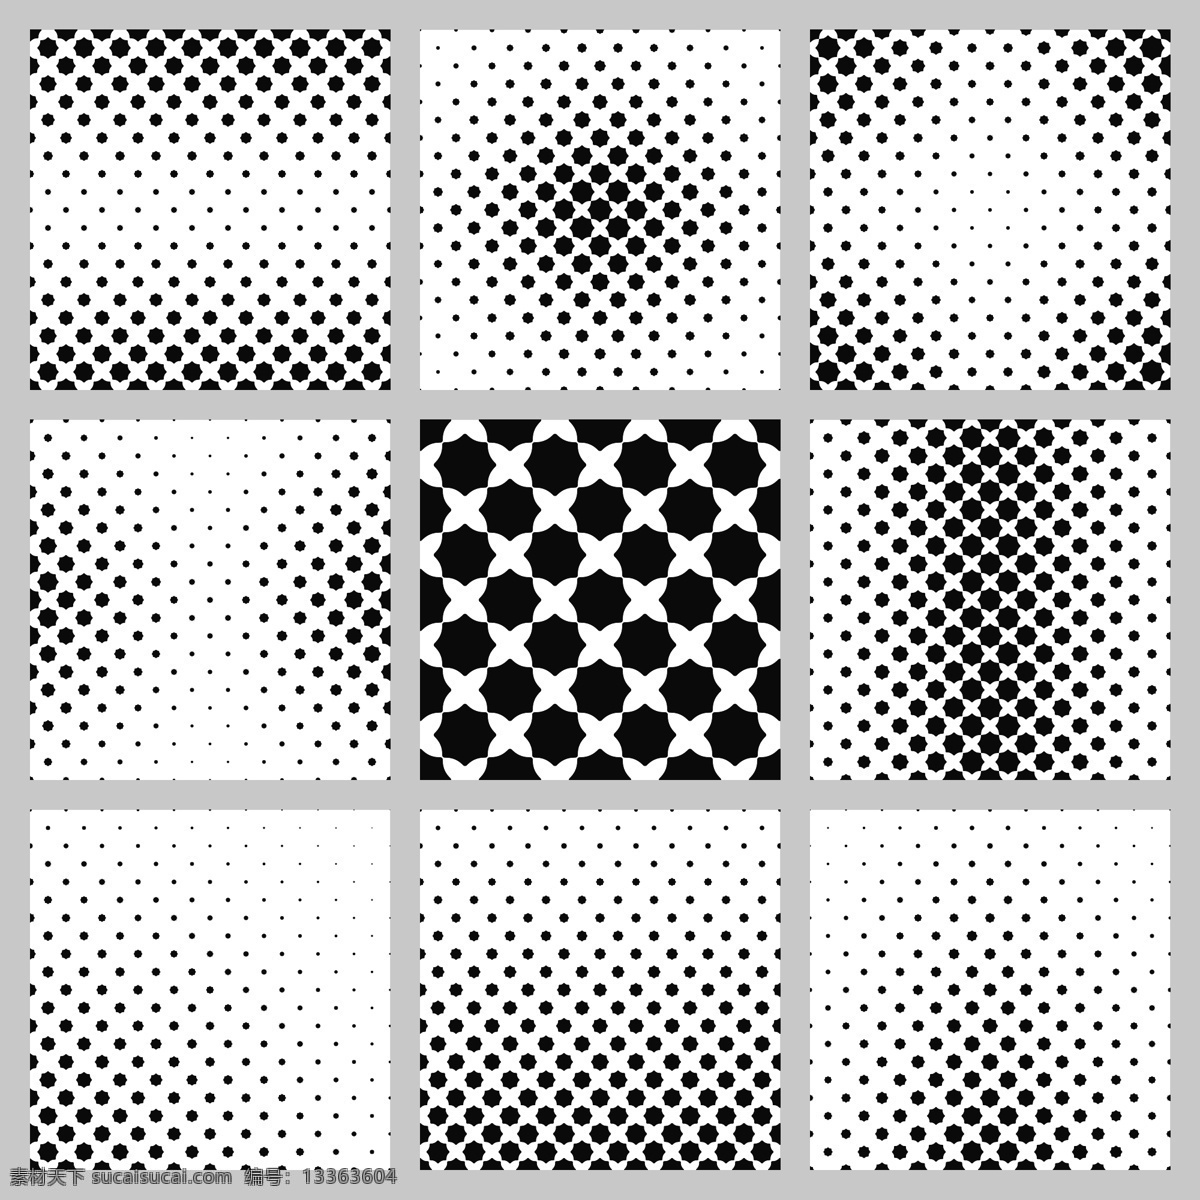 黑色 白色 八角形 图案 背景 设置 小册子 抽象背景 海报 抽象 封面 边框 几何 黑色背景 多边形 墙纸 几何图案 网络 白色背景 图形 几何背景 装饰